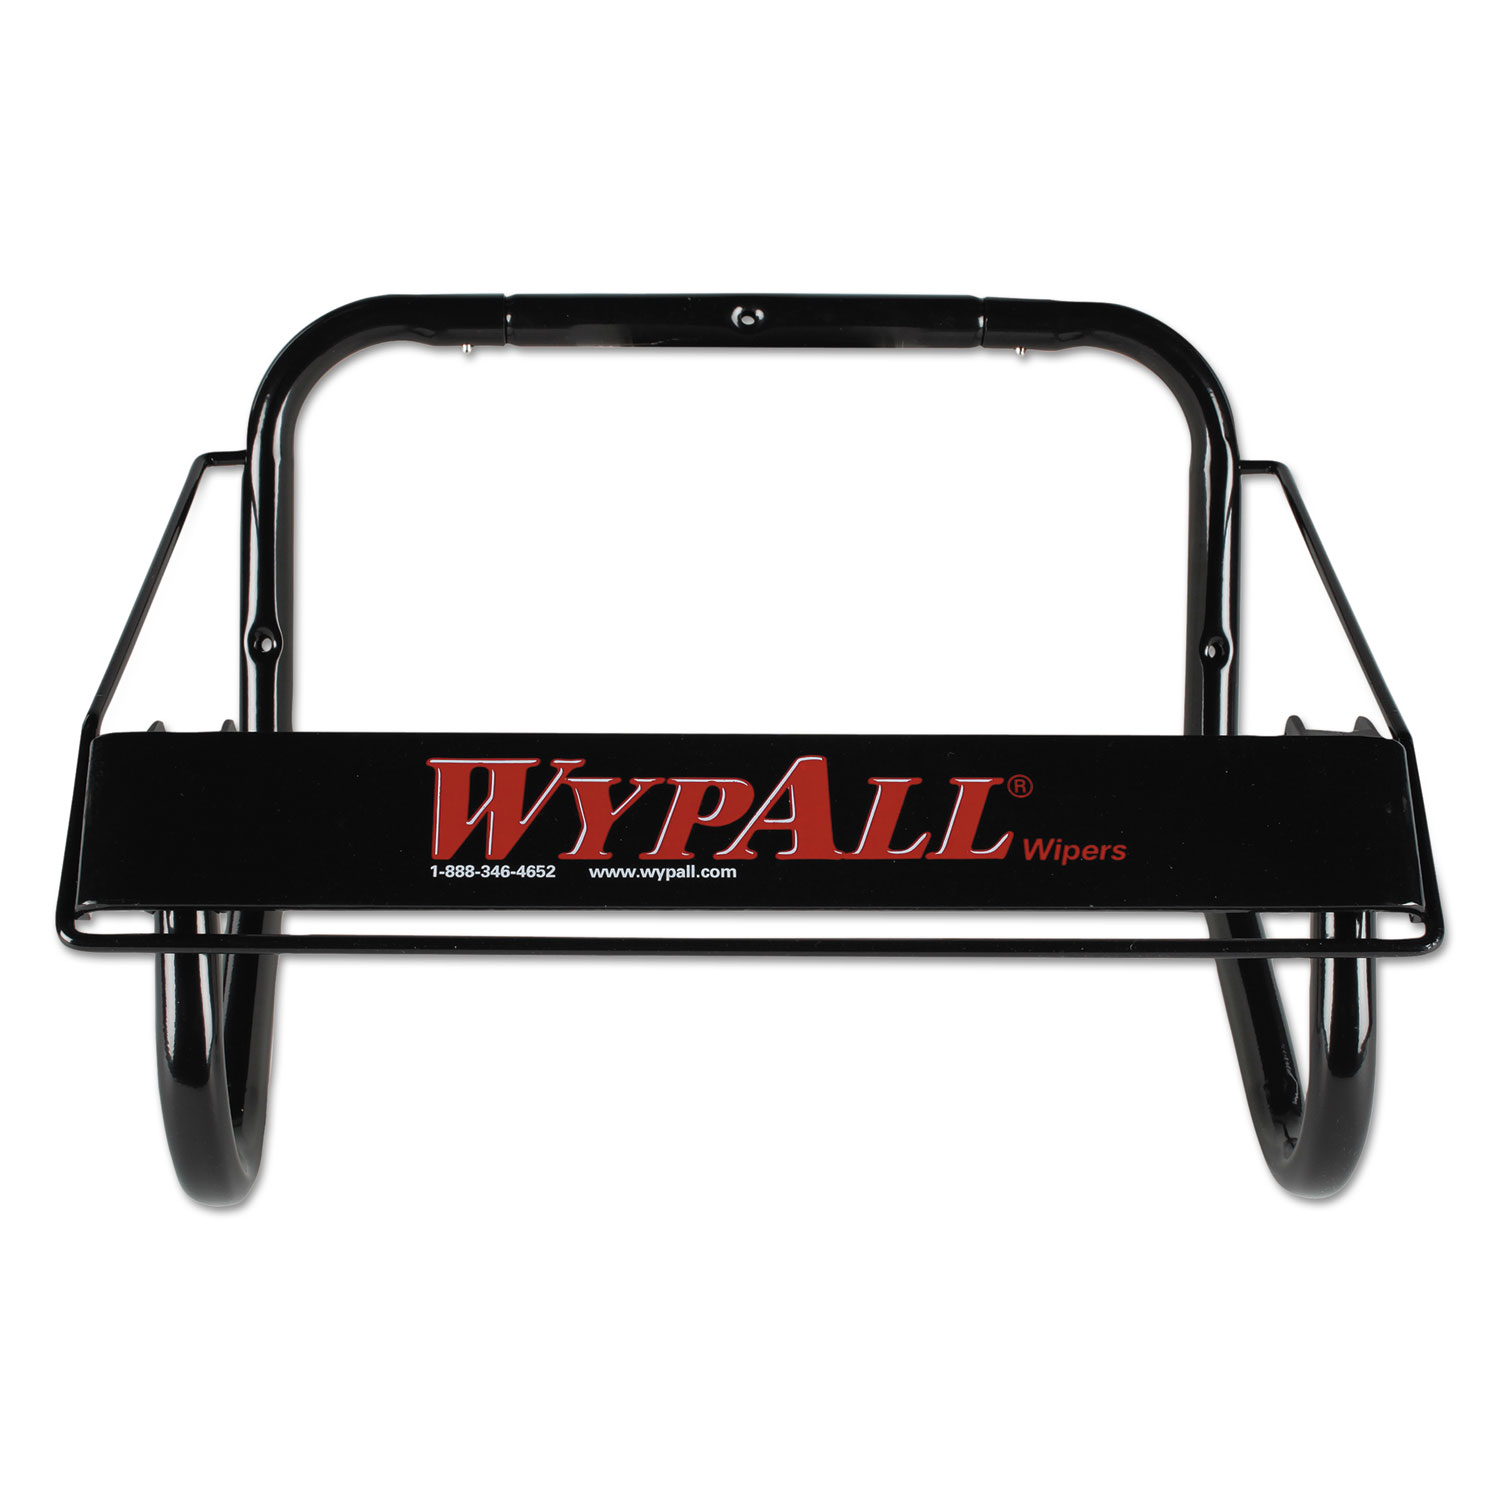  WypAll 80579 Jumbo Roll Dispenser, 16 4/5w x 8 4/5d x 10 4/5h, Black (KCC80579) 